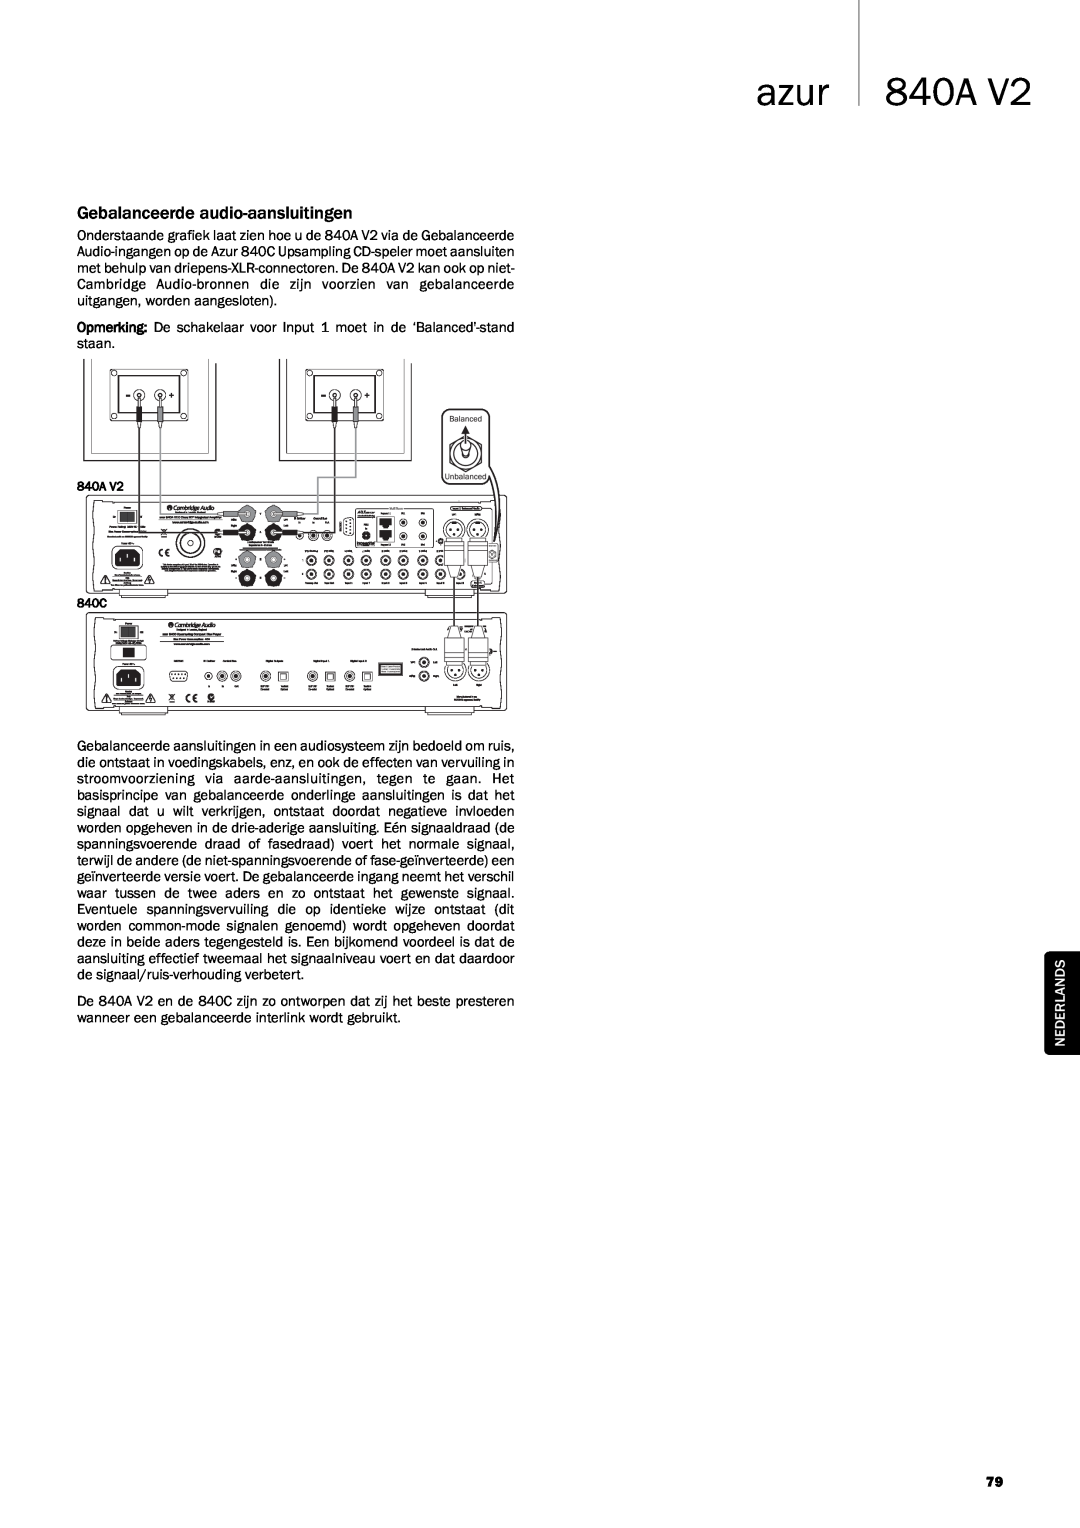 Cambridge Audio 840A V2 manual azur 840A, Gebalanceerde audio-aansluitingen, Nederlands 